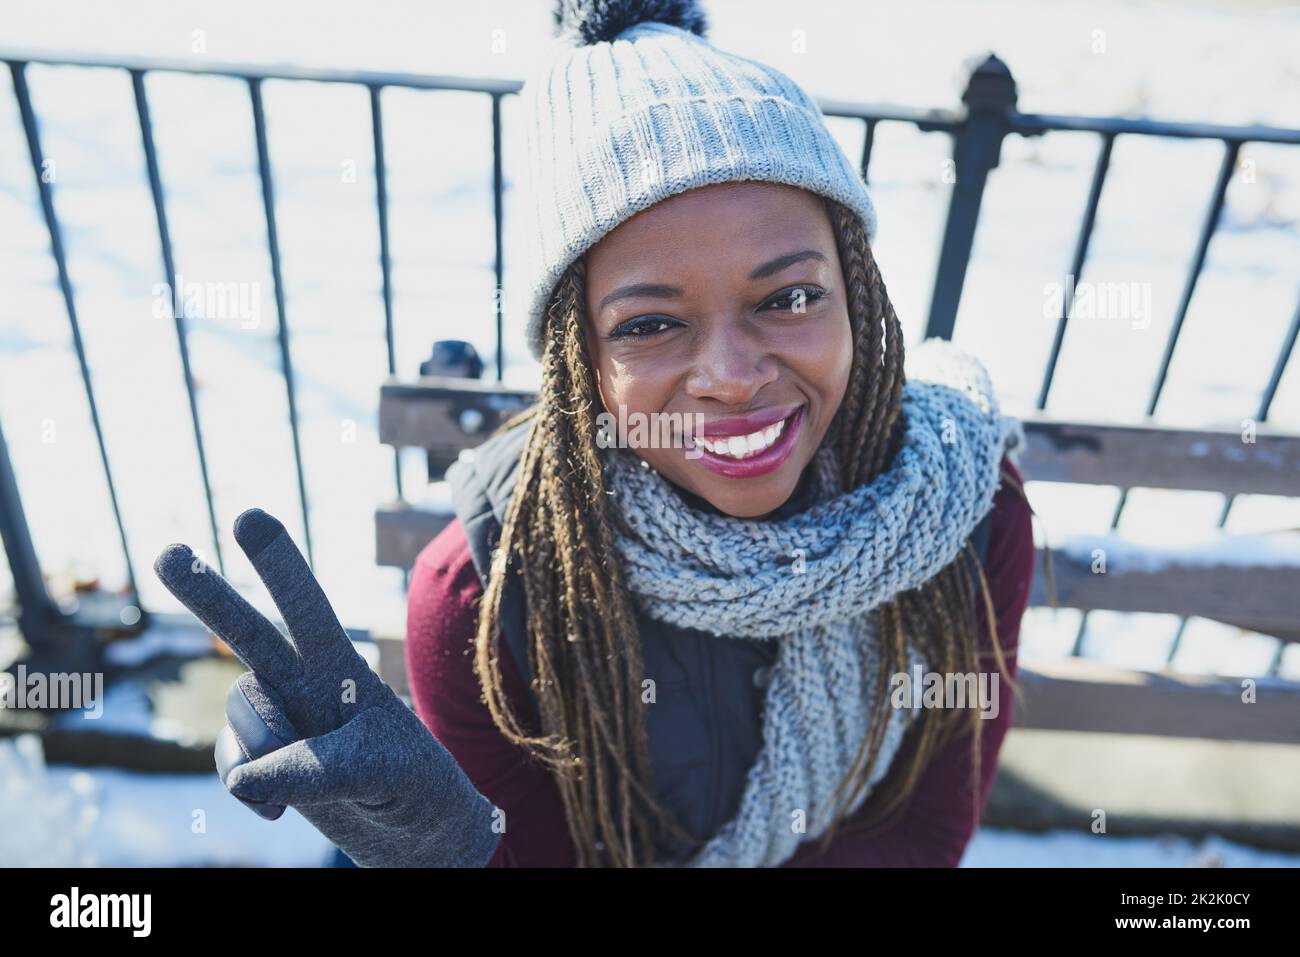 L'hiver, restez au frais. Photo d'une belle jeune femme faisant un geste de paix lors d'une journée enneigée en plein air. Banque D'Images